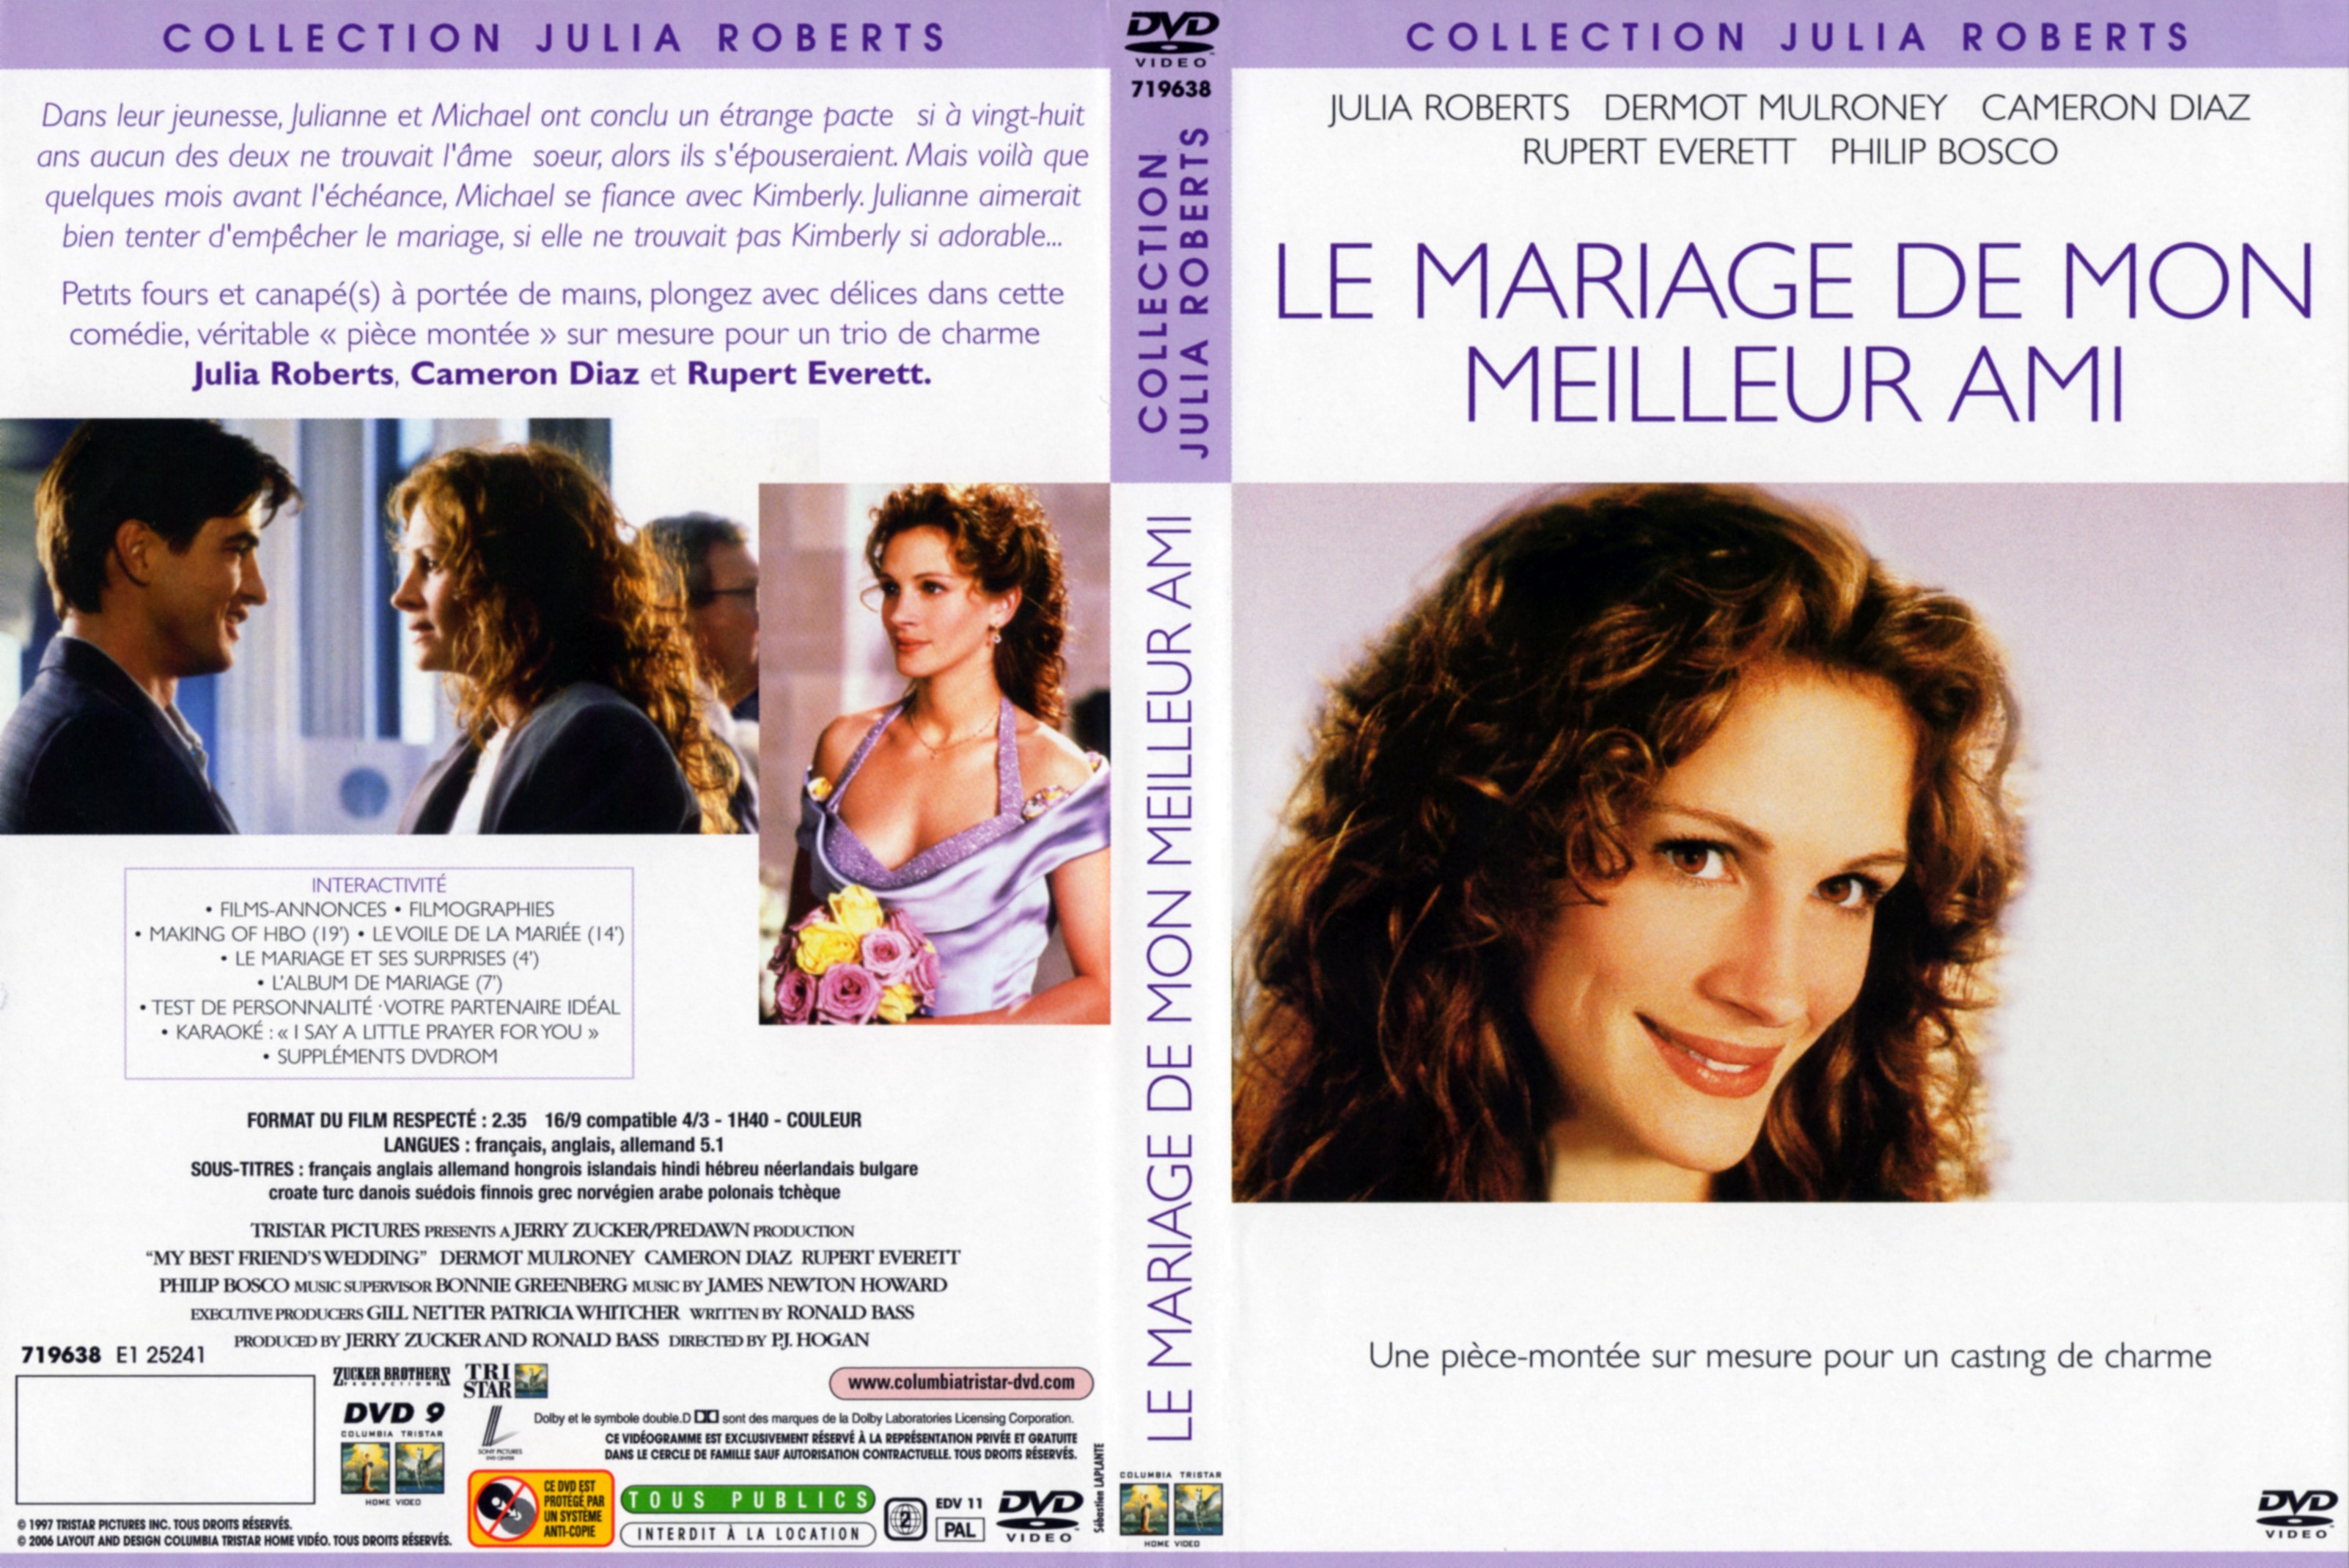 Jaquette DVD Le mariage de mon meilleur ami v2